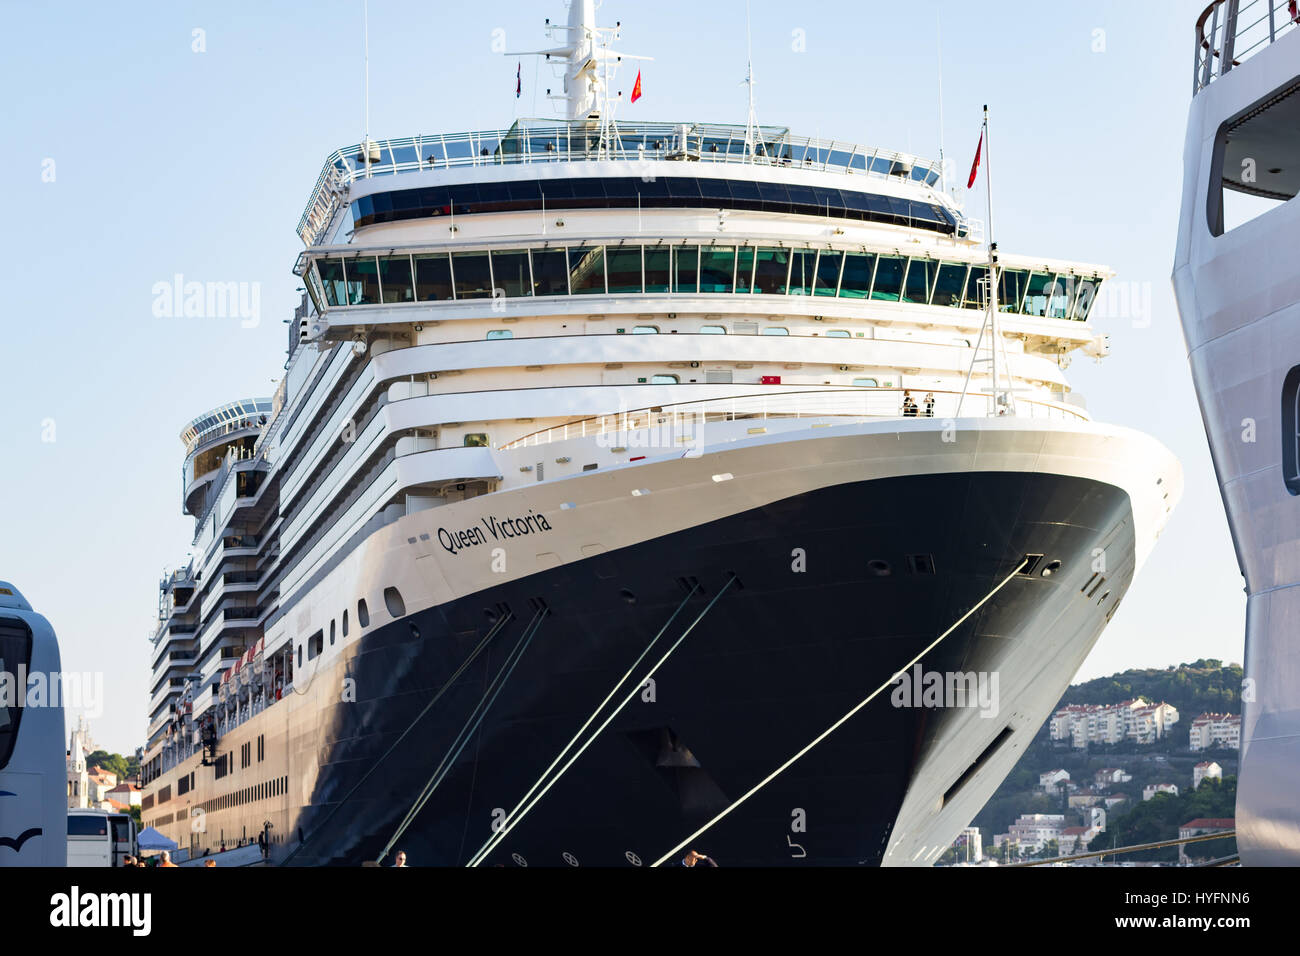 Queen Victoria docked in Dubrovnik Stock Photo